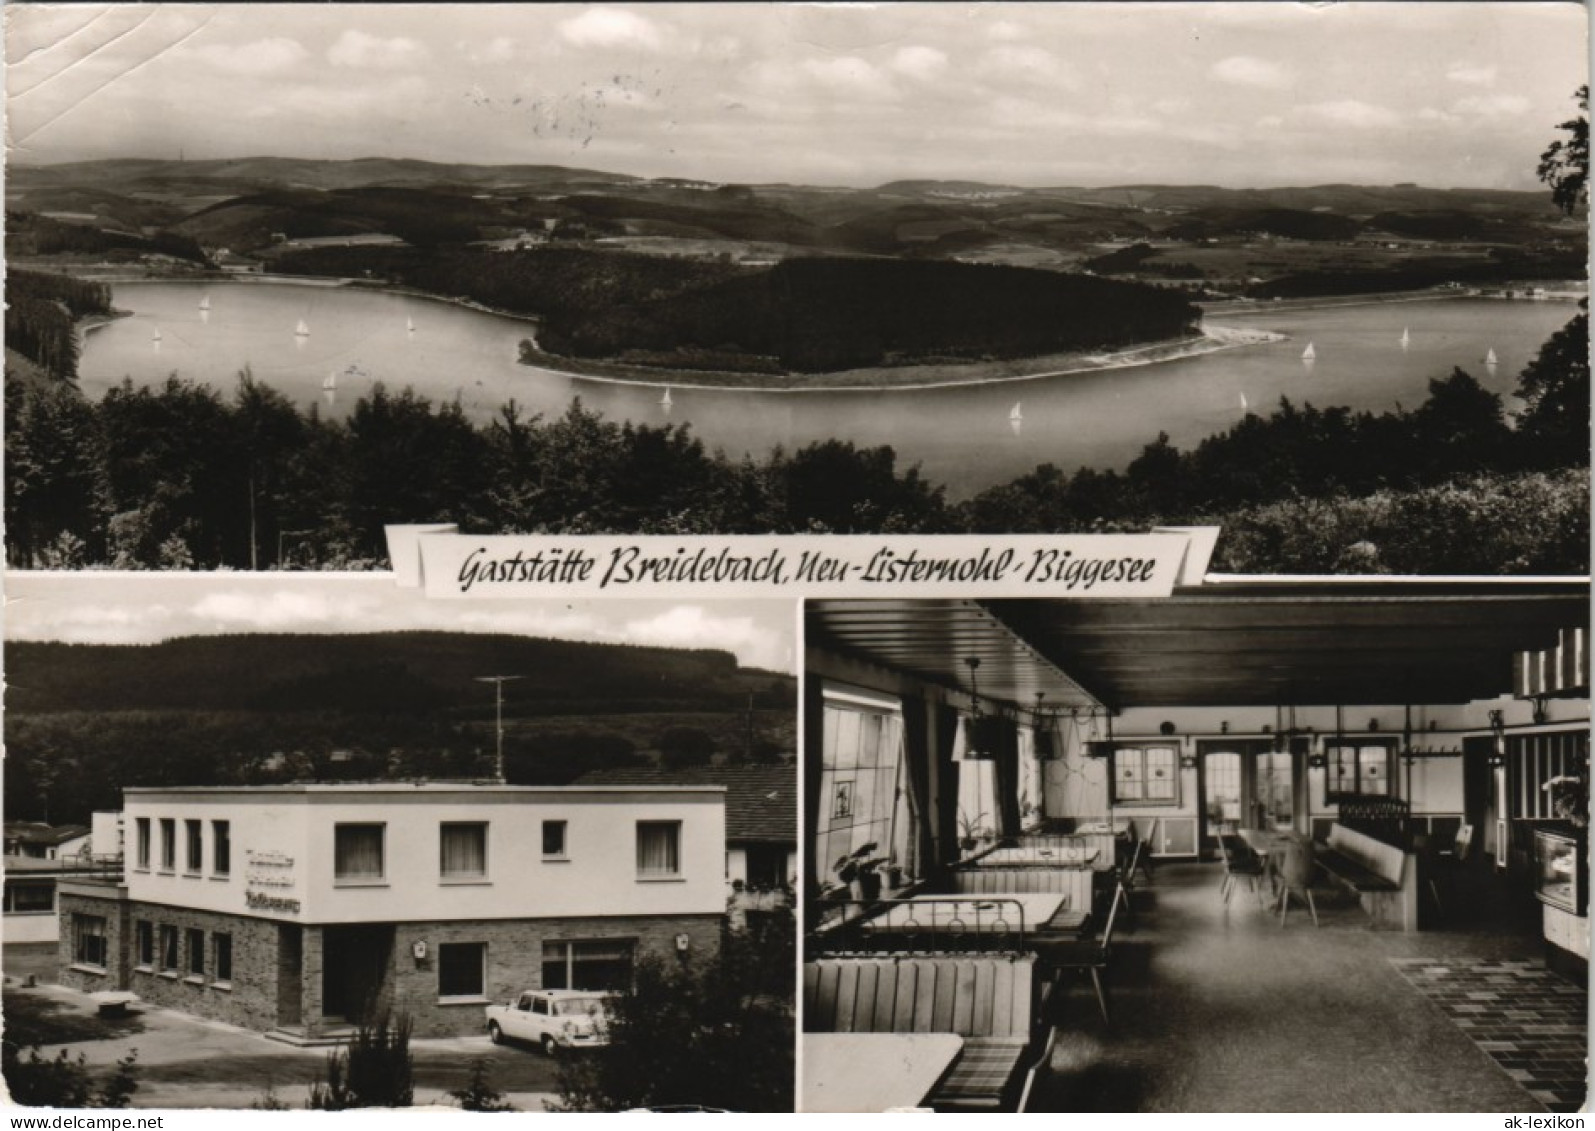 Ansichtskarte Attendorn Gaststätte Breidebrach, Neu-Listernohl-Biggesee 1960 - Attendorn